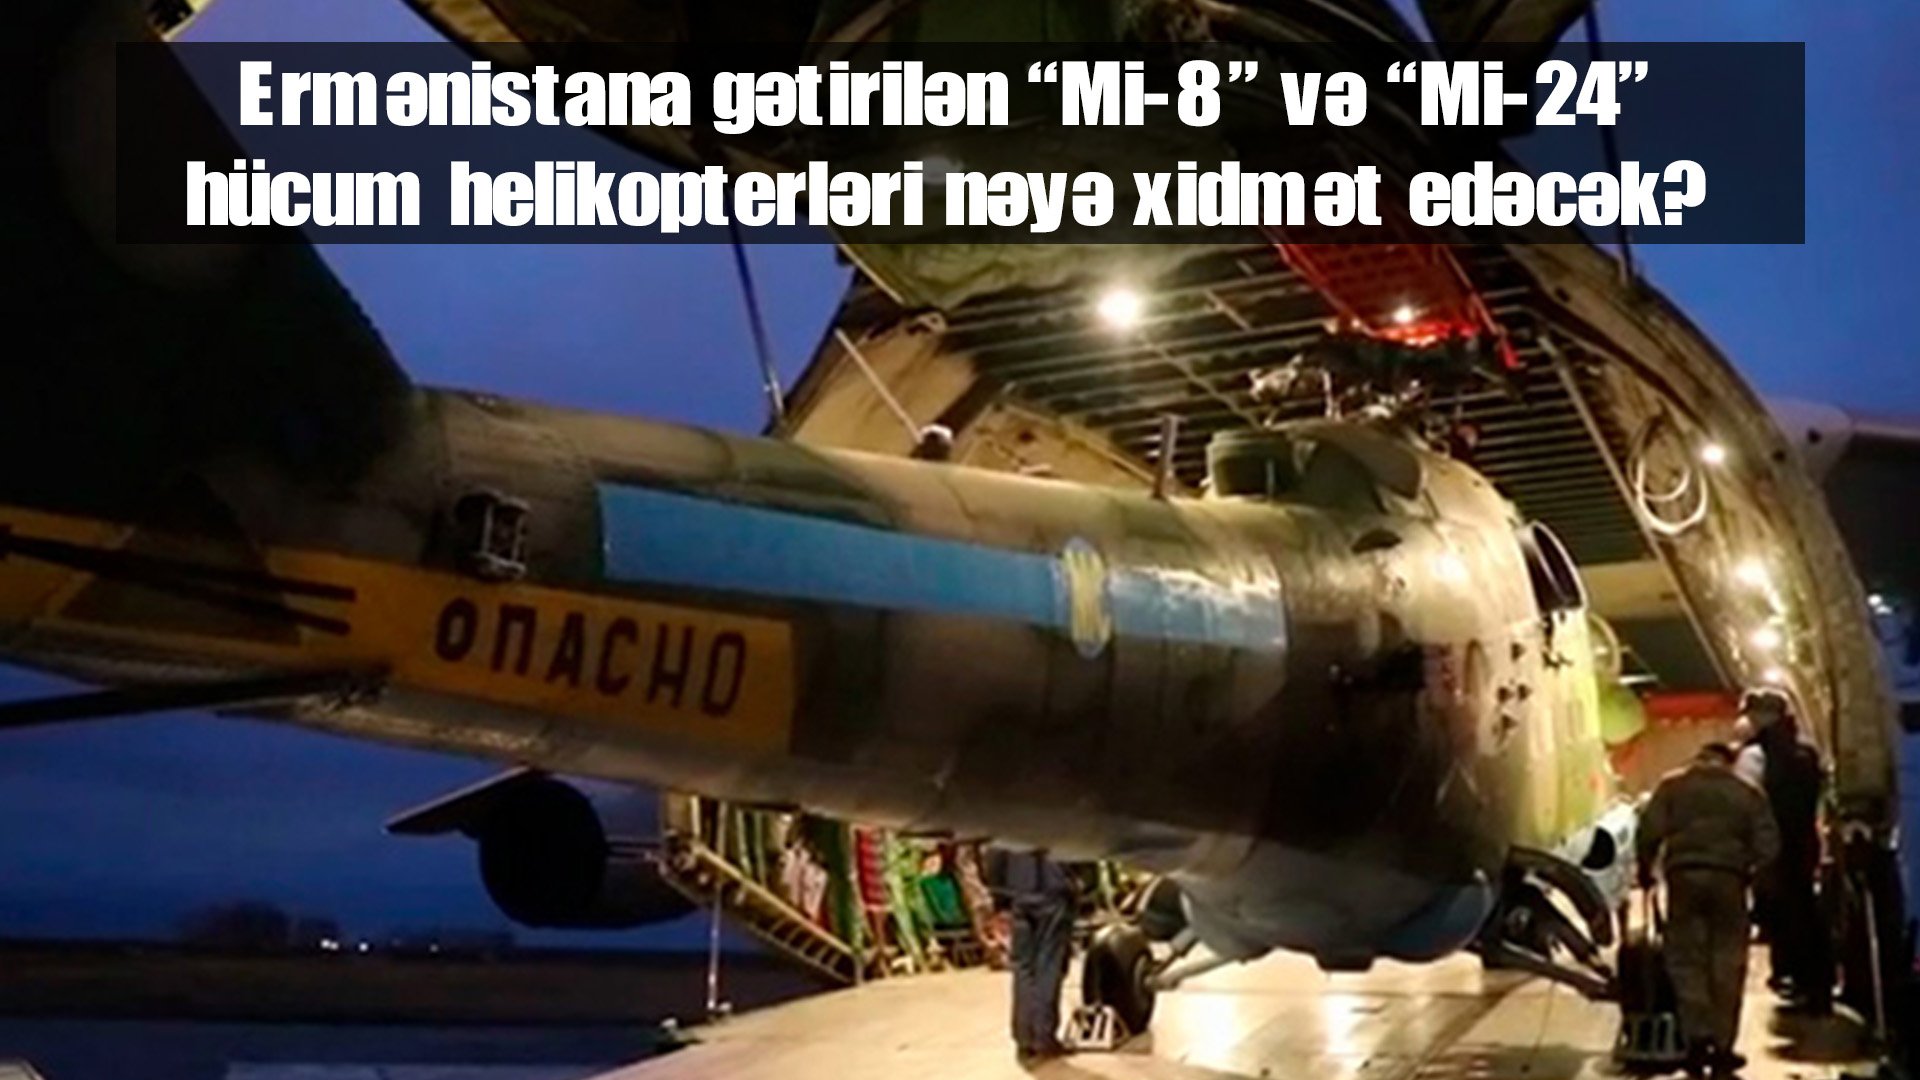 Ermənistana gətirilən “Mi-8” və “Mi-24” hücum helikopterləri nəyə xidmət edəcək?